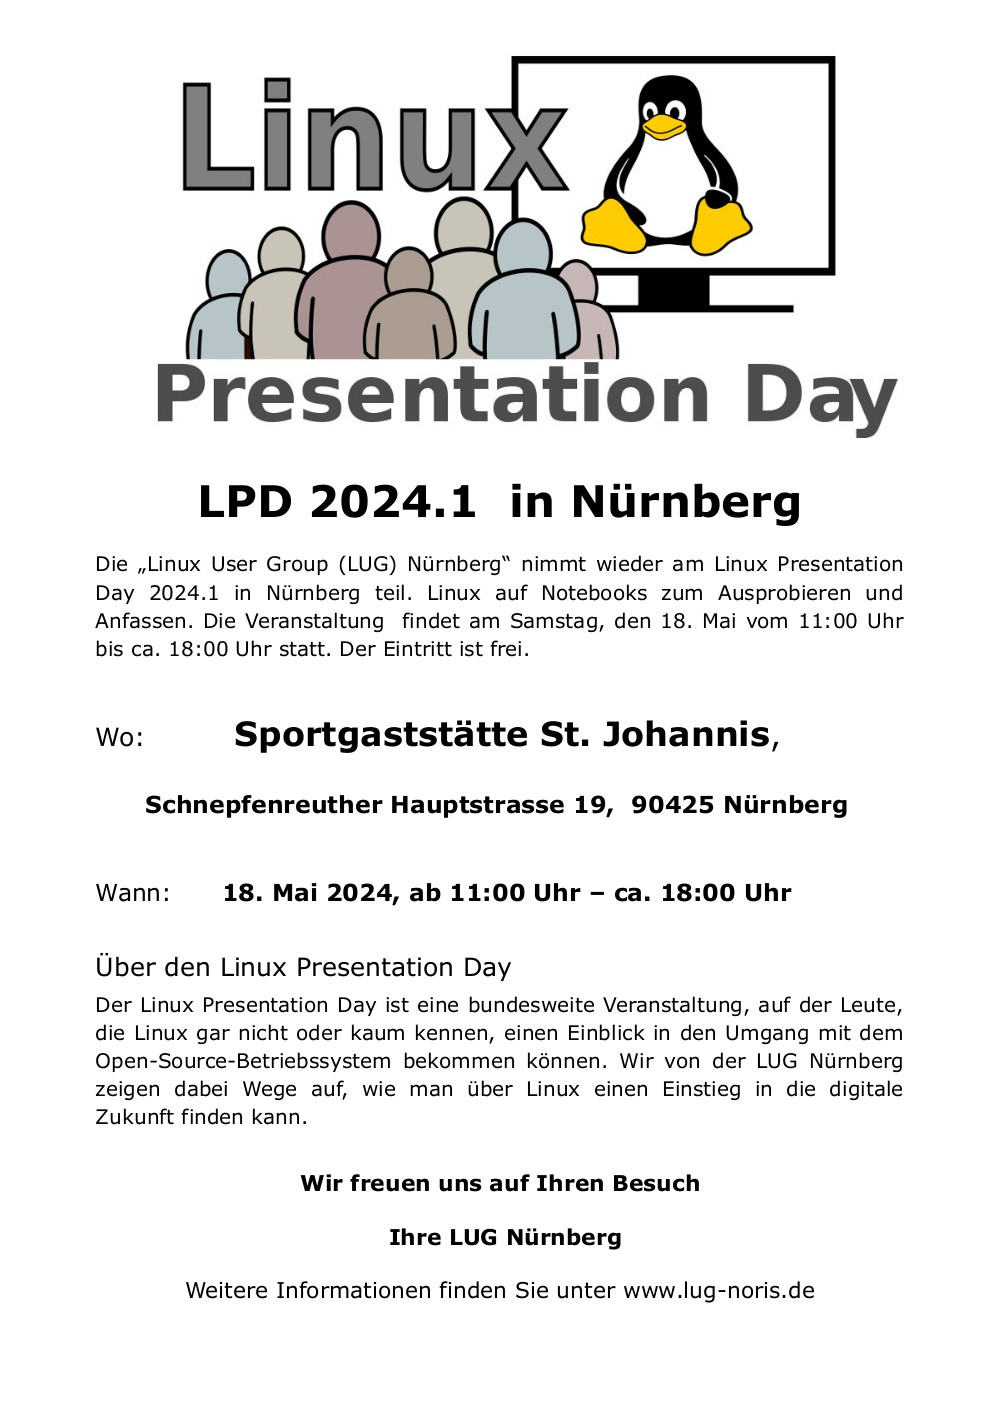 Plakat: Unter dem Logodes Linux Presentation Day steht folgender Text: "LPD 2024.1 in Nürnberg Die „Linux User Group (LUG) Nürnberg“ nimmt wieder am Linux Presentation Day 2024.1 in Nürnberg teil. Linux auf Notebooks zum Ausprobieren und Anfassen. <br />Die Veranstaltung findet am Samstag, den 18. Mai vom 11:00 Uhr bis ca. 18:00 Uhr statt. Der Eintritt ist frei. Wo: Sportgaststätte St. Johannis, Schnepfenreuther Hauptstrasse 19, 90425 Nürnberg Wann: 18. Mai 2024, ab 11:00 Uhr – ca. 18:00 Uhr Über <br />den Linux Presentation Day Der Linux Presentation Day ist eine bundesweite Veranstaltung, auf der Leute, die Linux gar nicht oder kaum kennen, einen Einblick in den Umgang mit dem Open-Source-Betriebssystem bekommen können. Wir von der LUG Nürnberg <br />zeigen dabei Wege auf, wie man über Linux einen Einstieg in die digitale Zukunft finden kann. Wir freuen uns auf Ihren Besuch Ihre LUG Nürnberg Weitere Informationen finden Sie unter www.lug-noris.de"